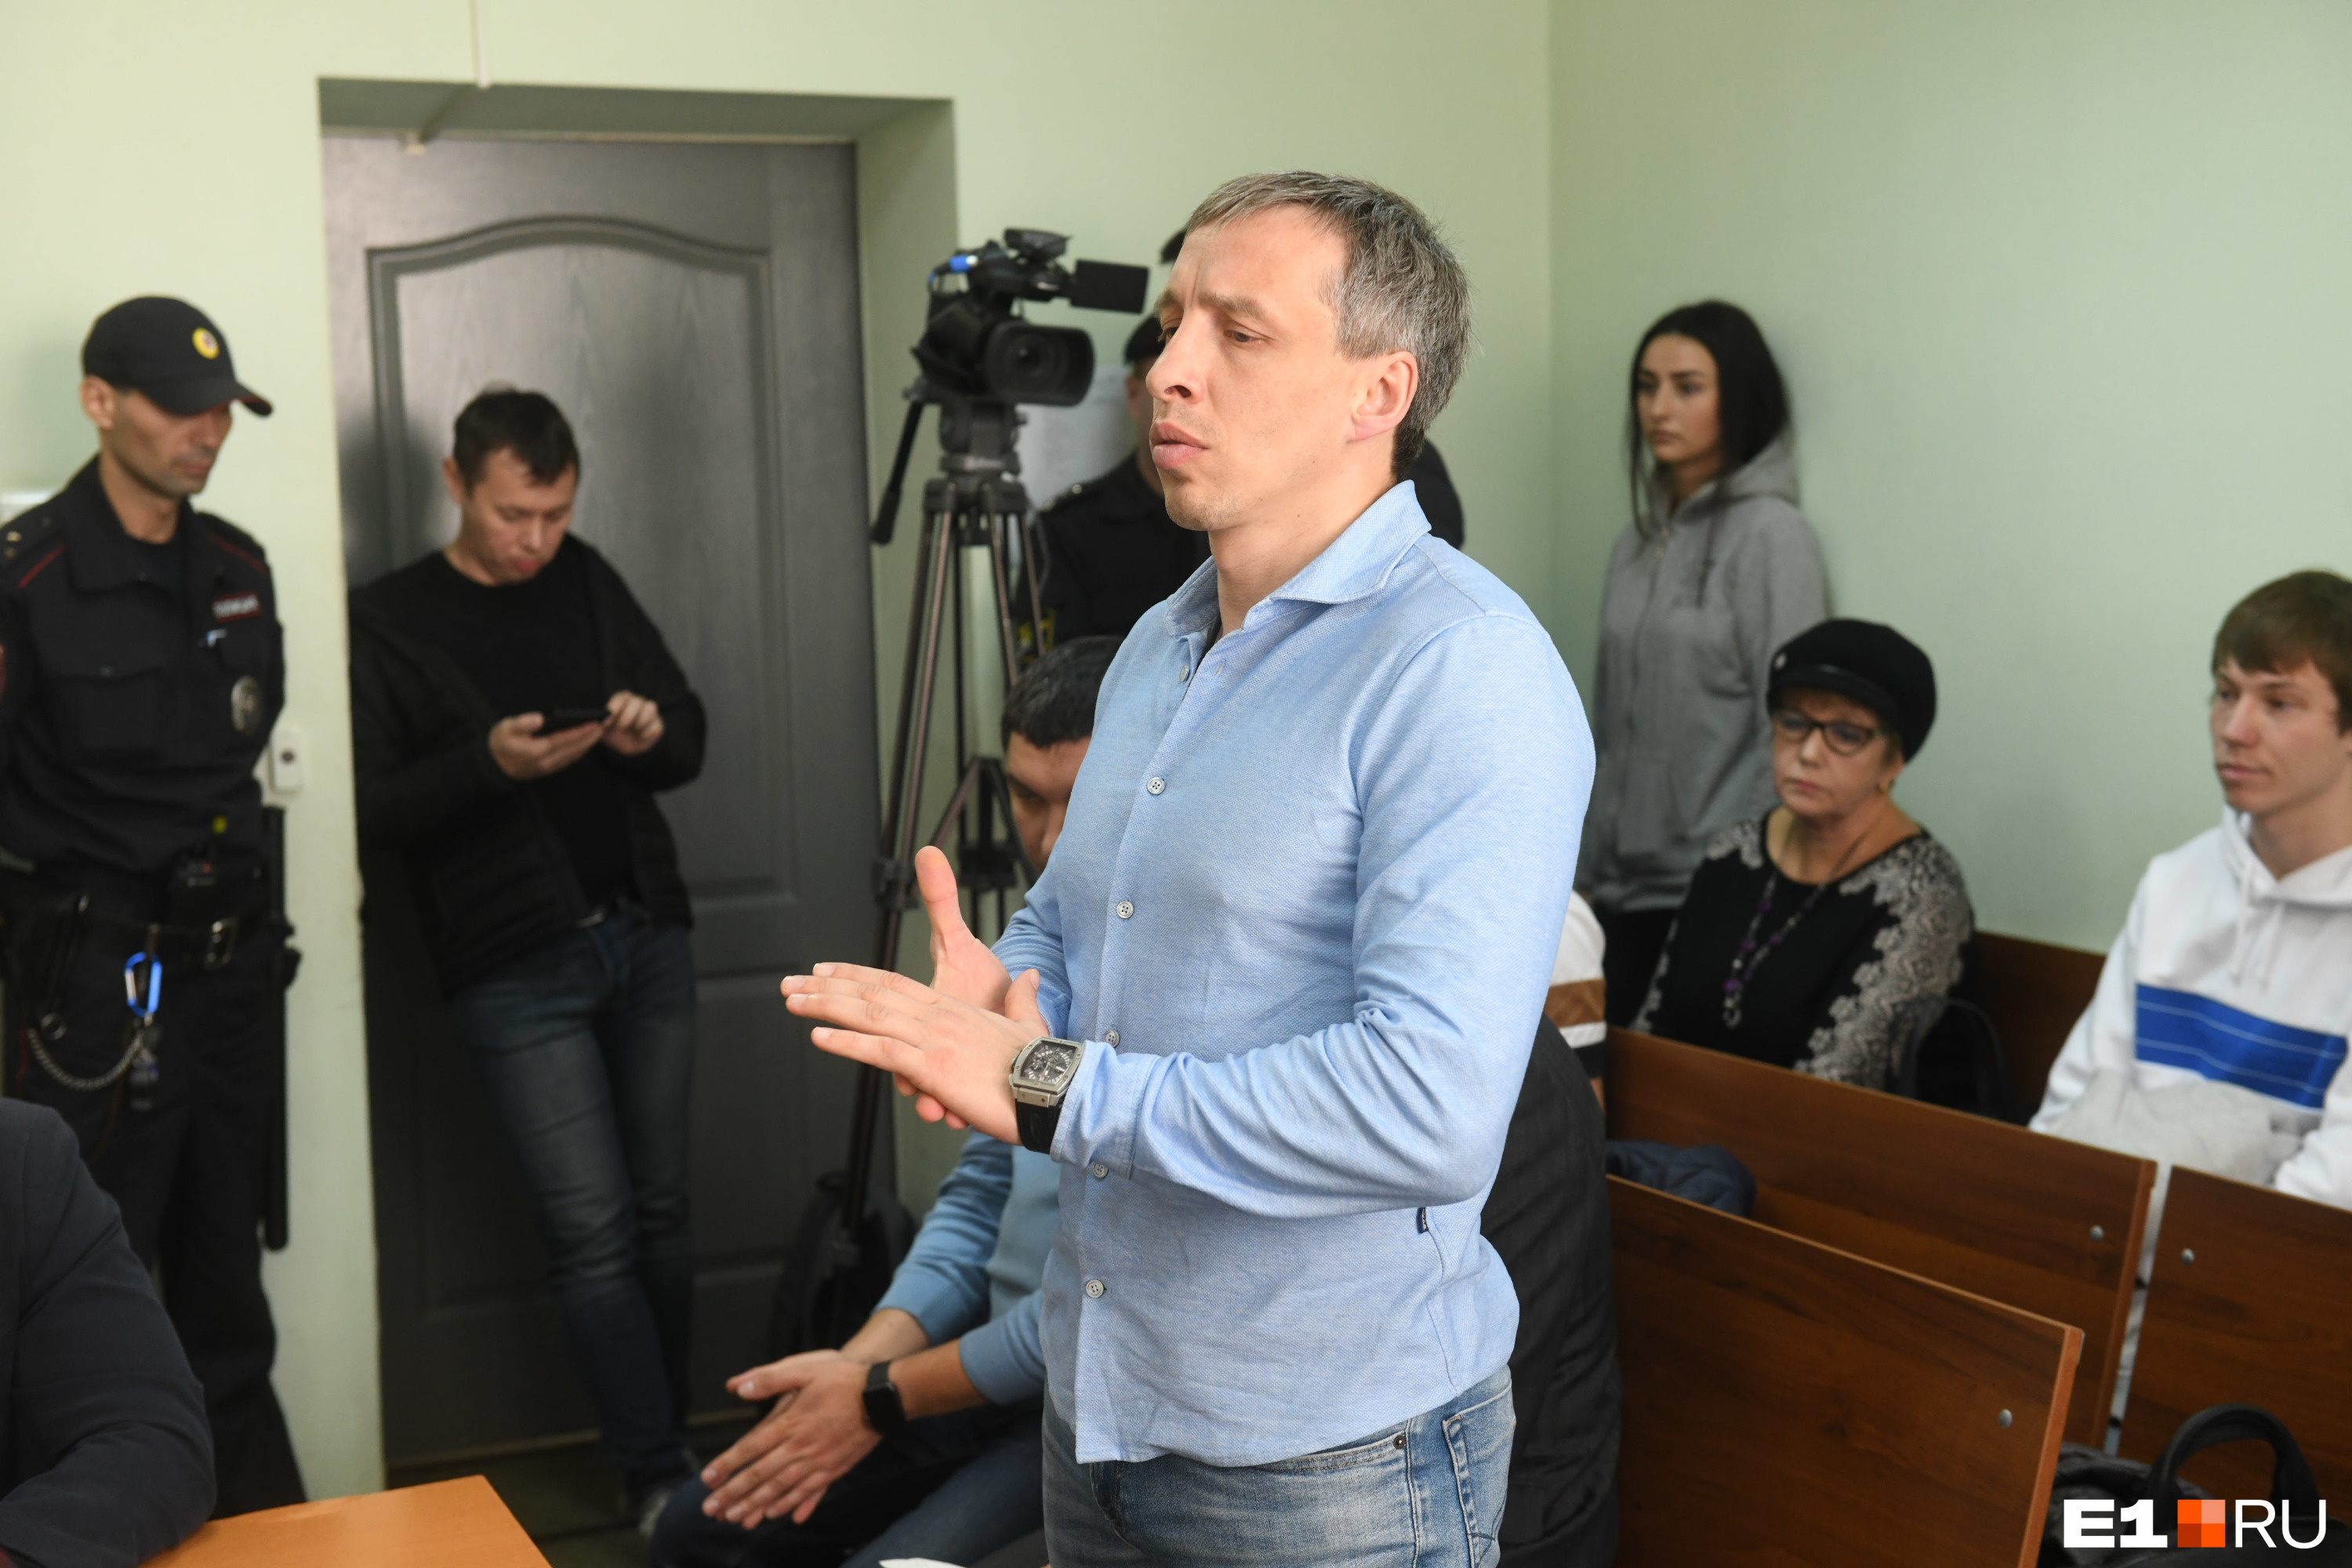 Адвокат Александр Шумилов будет настаивать на том, чтобы Васильев по максимуму расплатился за погубленные жизни